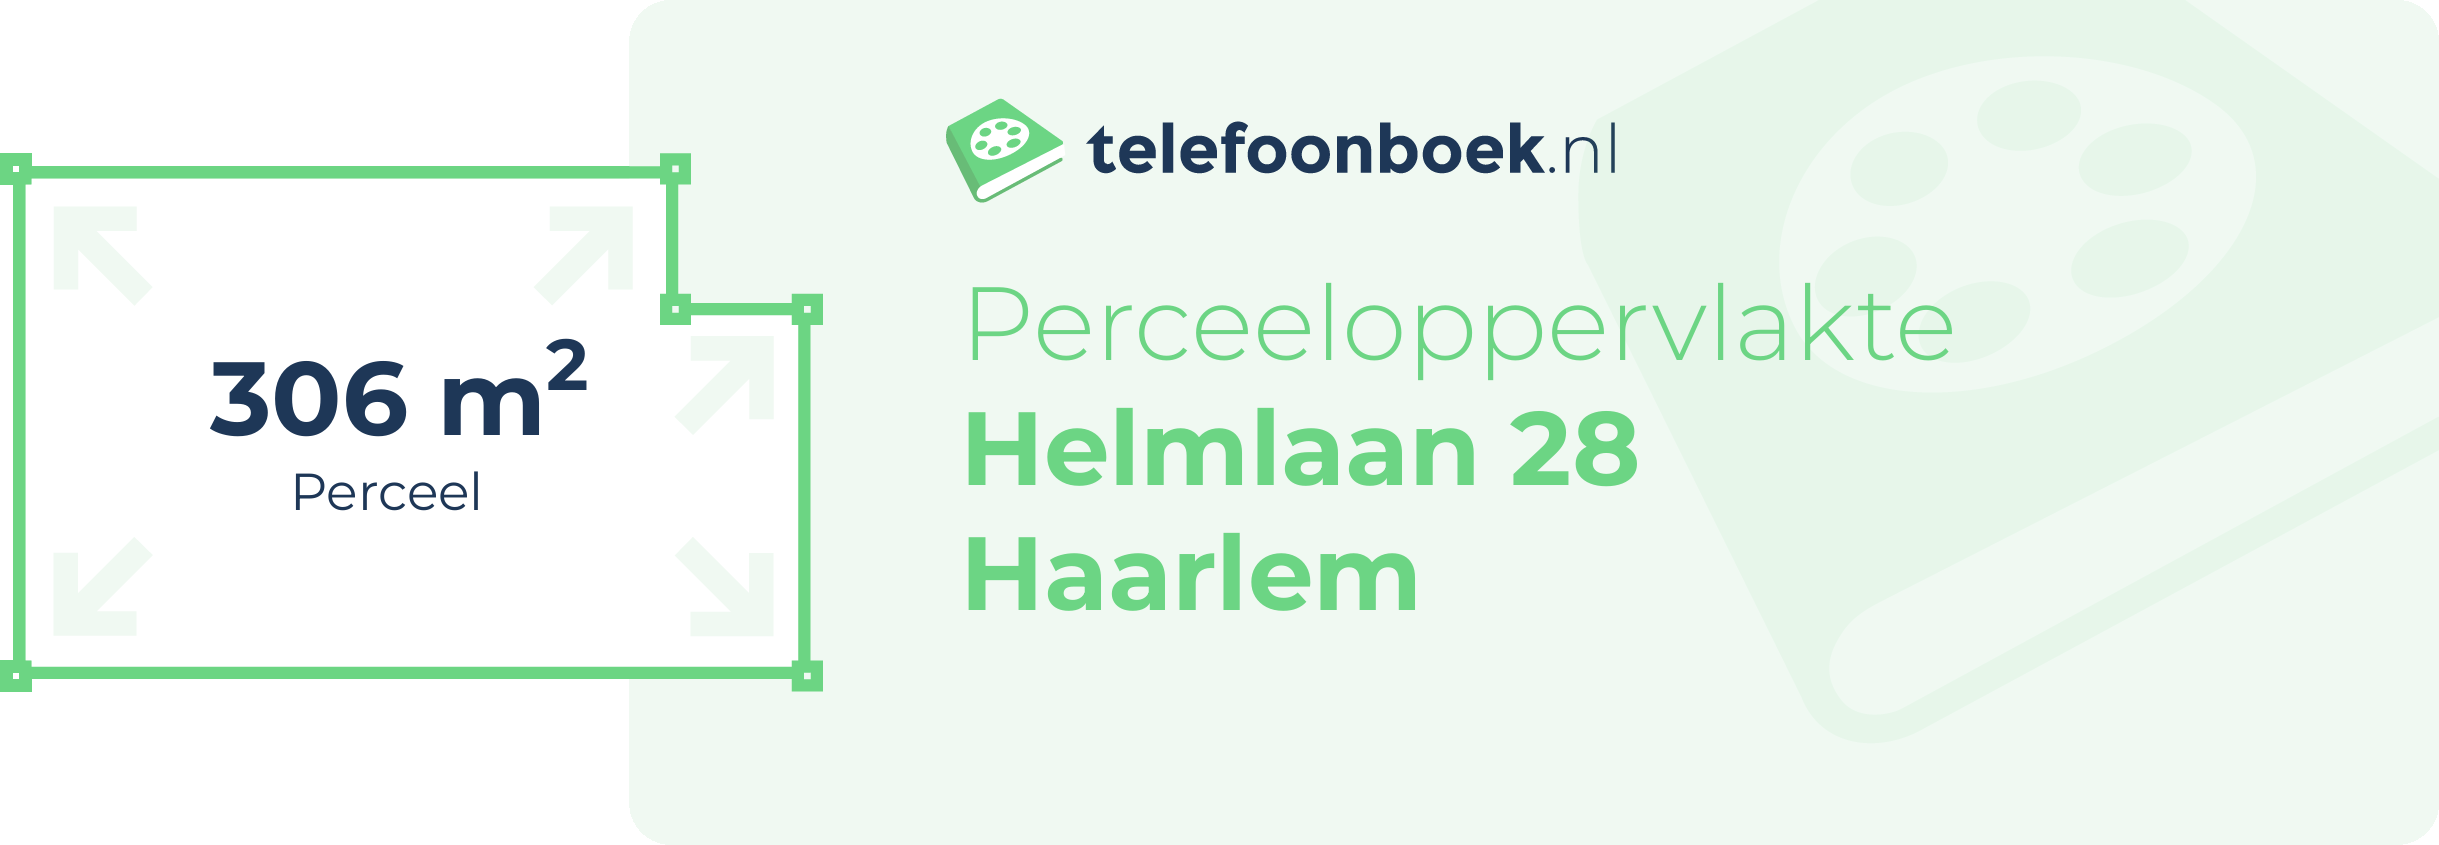 Perceeloppervlakte Helmlaan 28 Haarlem